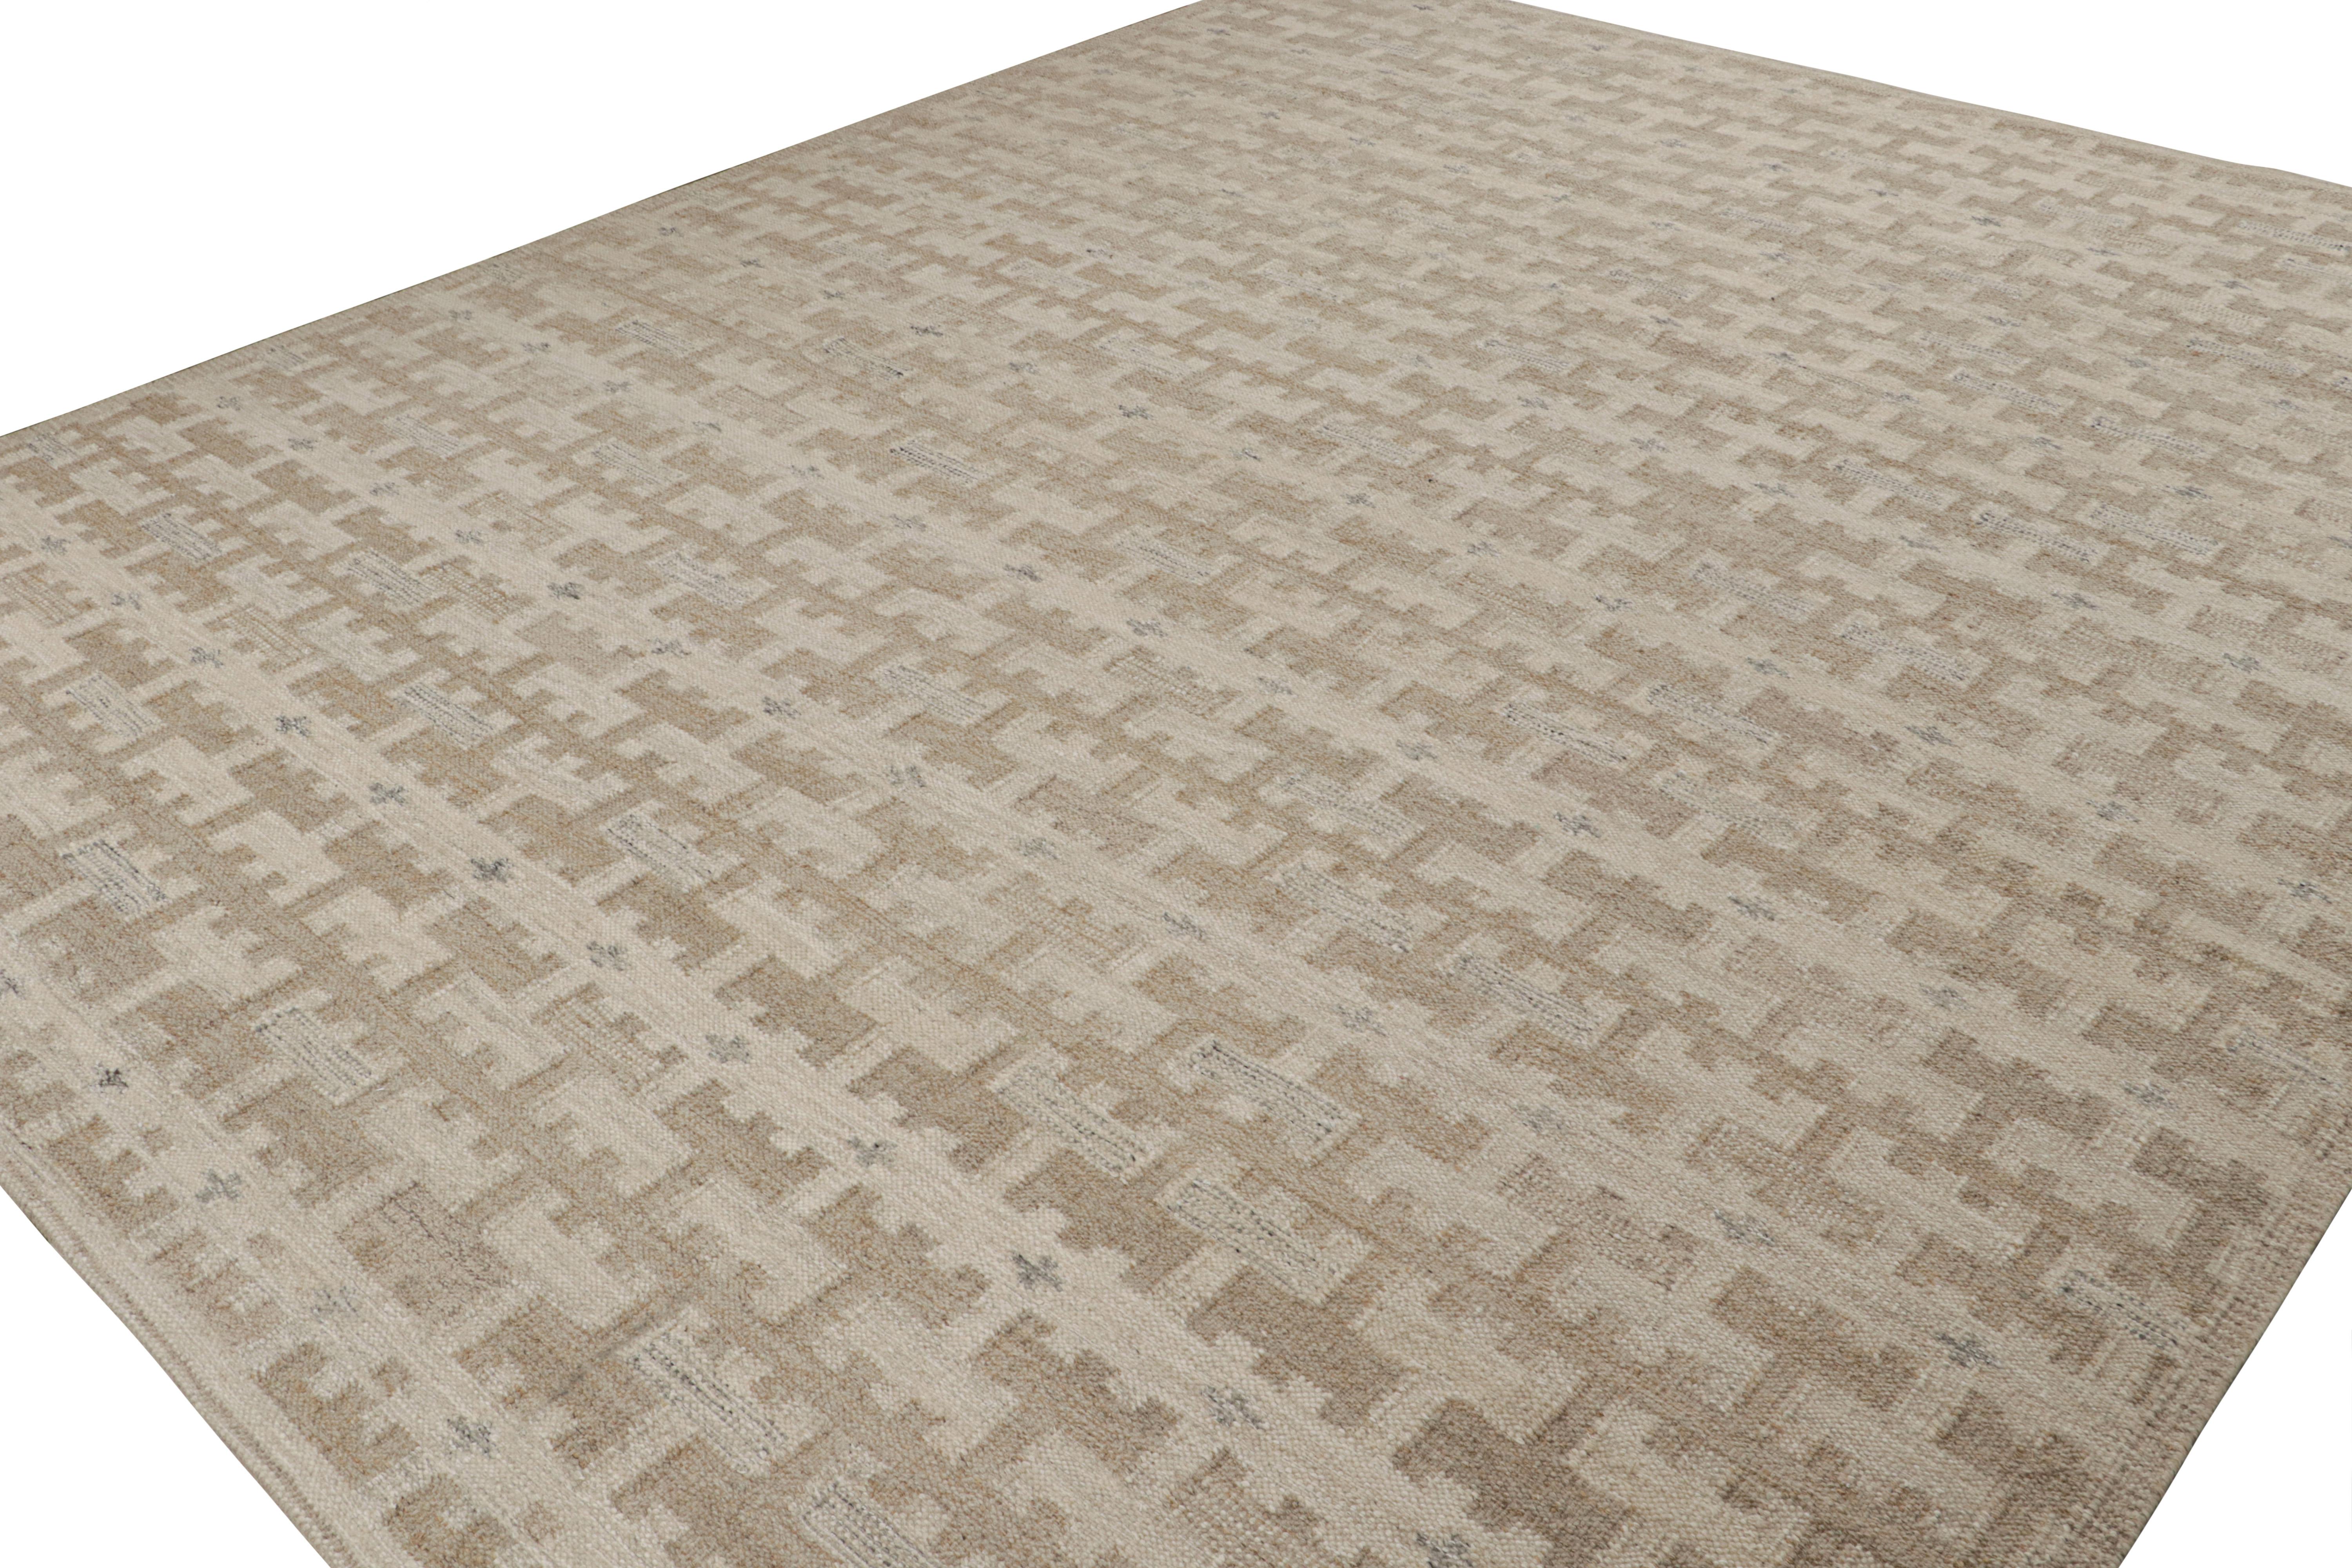 Dieser 12x14 Kilim-Teppich ist aus der Flachgewebe-Linie der skandinavischen Teppichkollektion von Rug & Kilim. Das aus Wolle, Baumwolle und natürlichen Garnen handgewebte Design ist eine moderne Interpretation der Teppiche Rollakan und Rya im